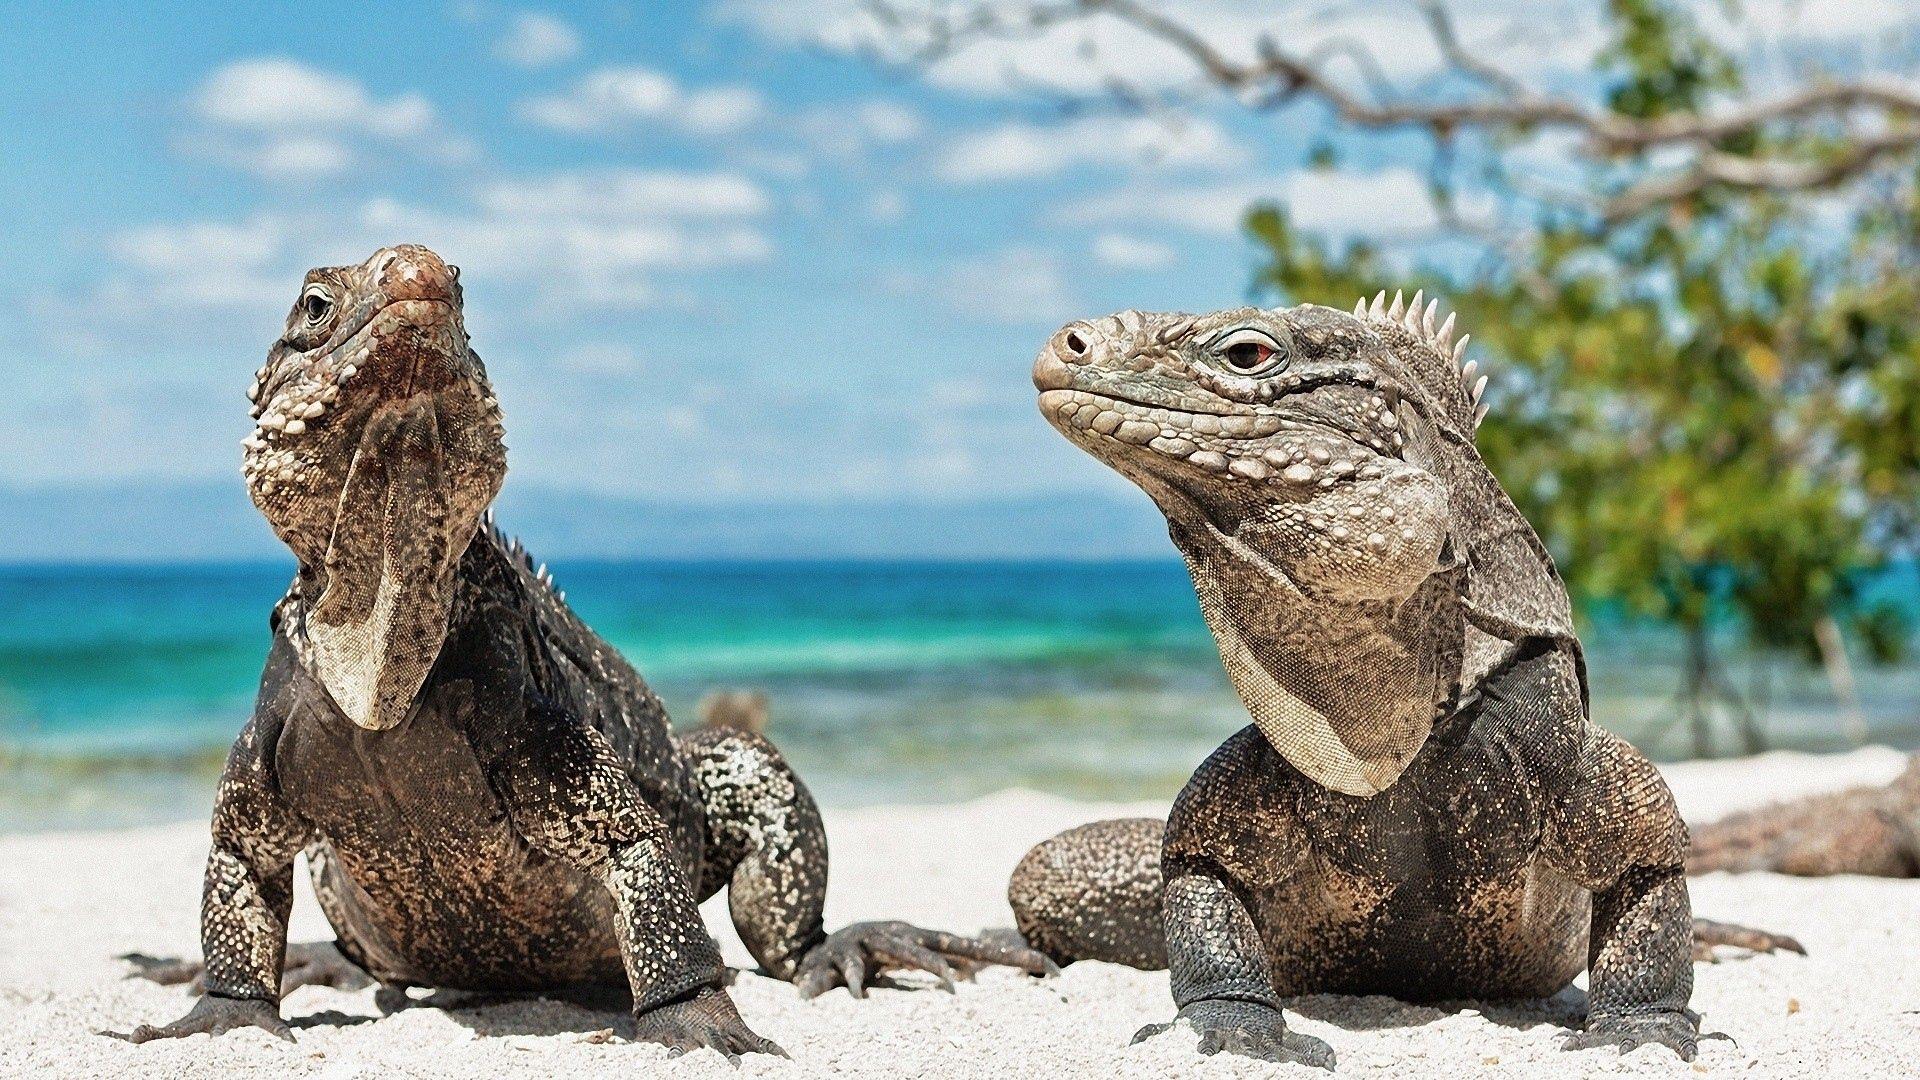 Download Wallpaper 1920x1080 iguana, reptile, reptiles Full HD 1080p